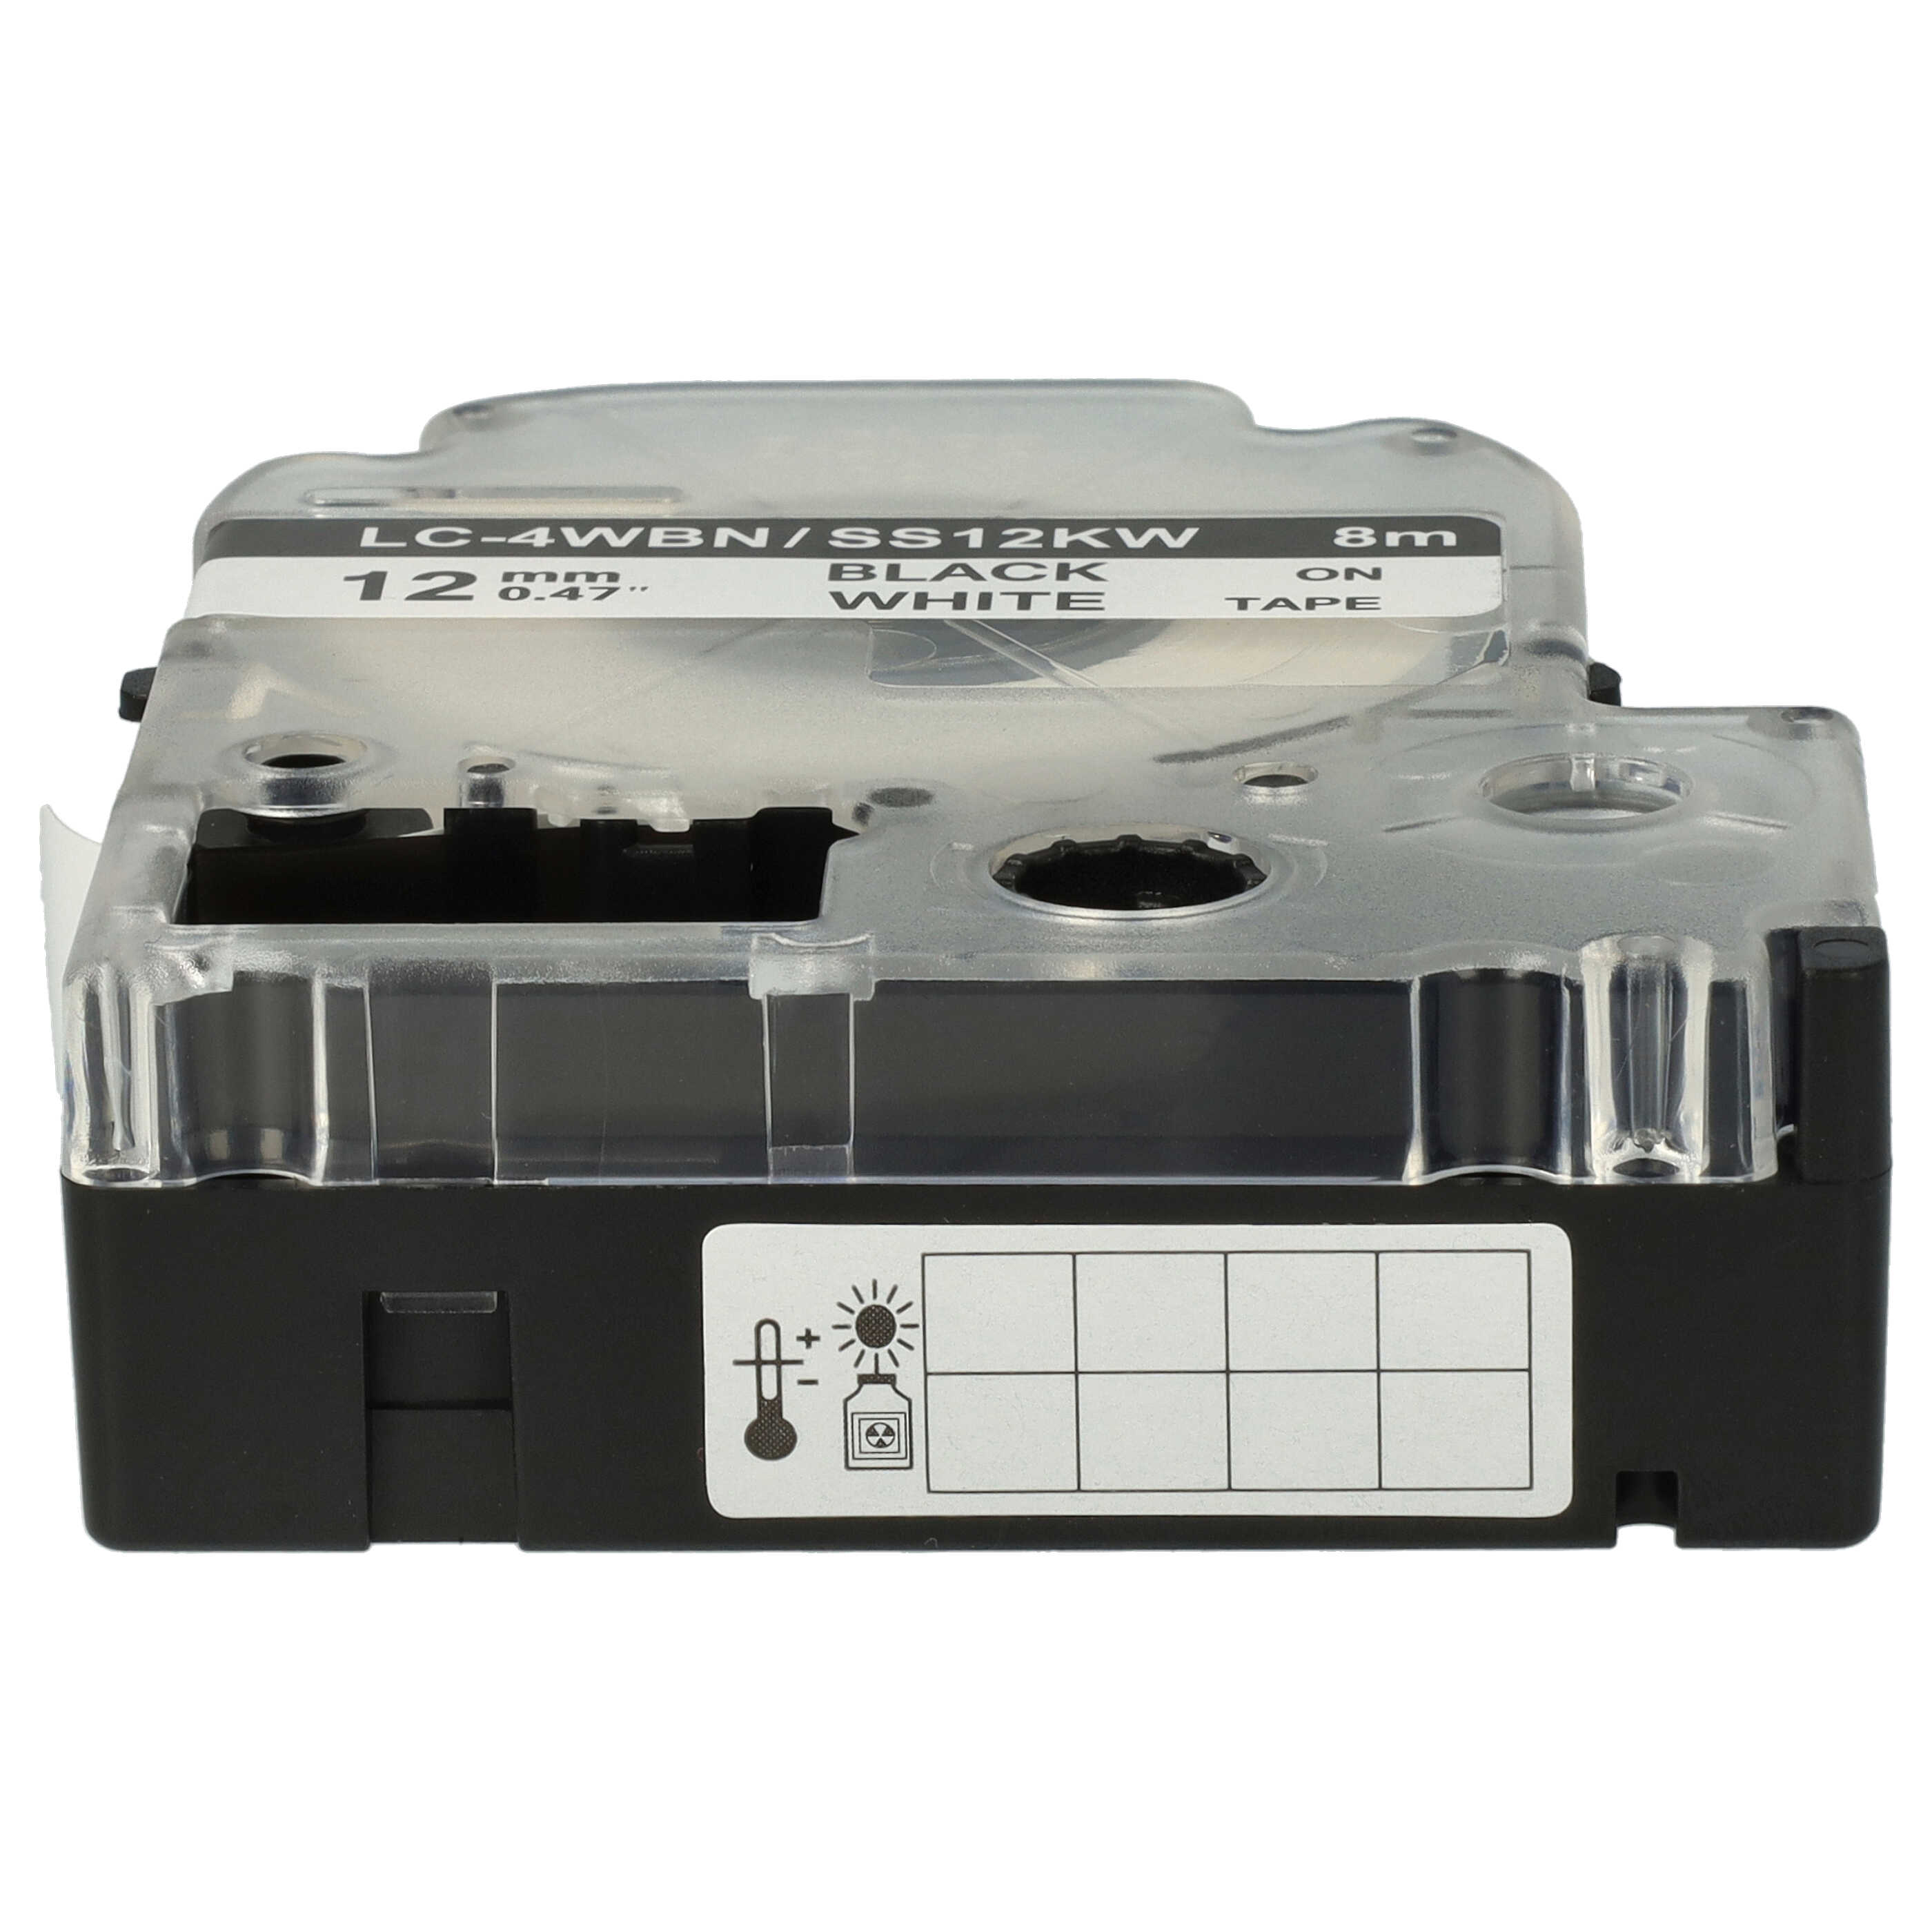 3x Cassettes à ruban remplacent Epson SS12KW, LC-4WBN - 12mm lettrage Noir ruban Blanc